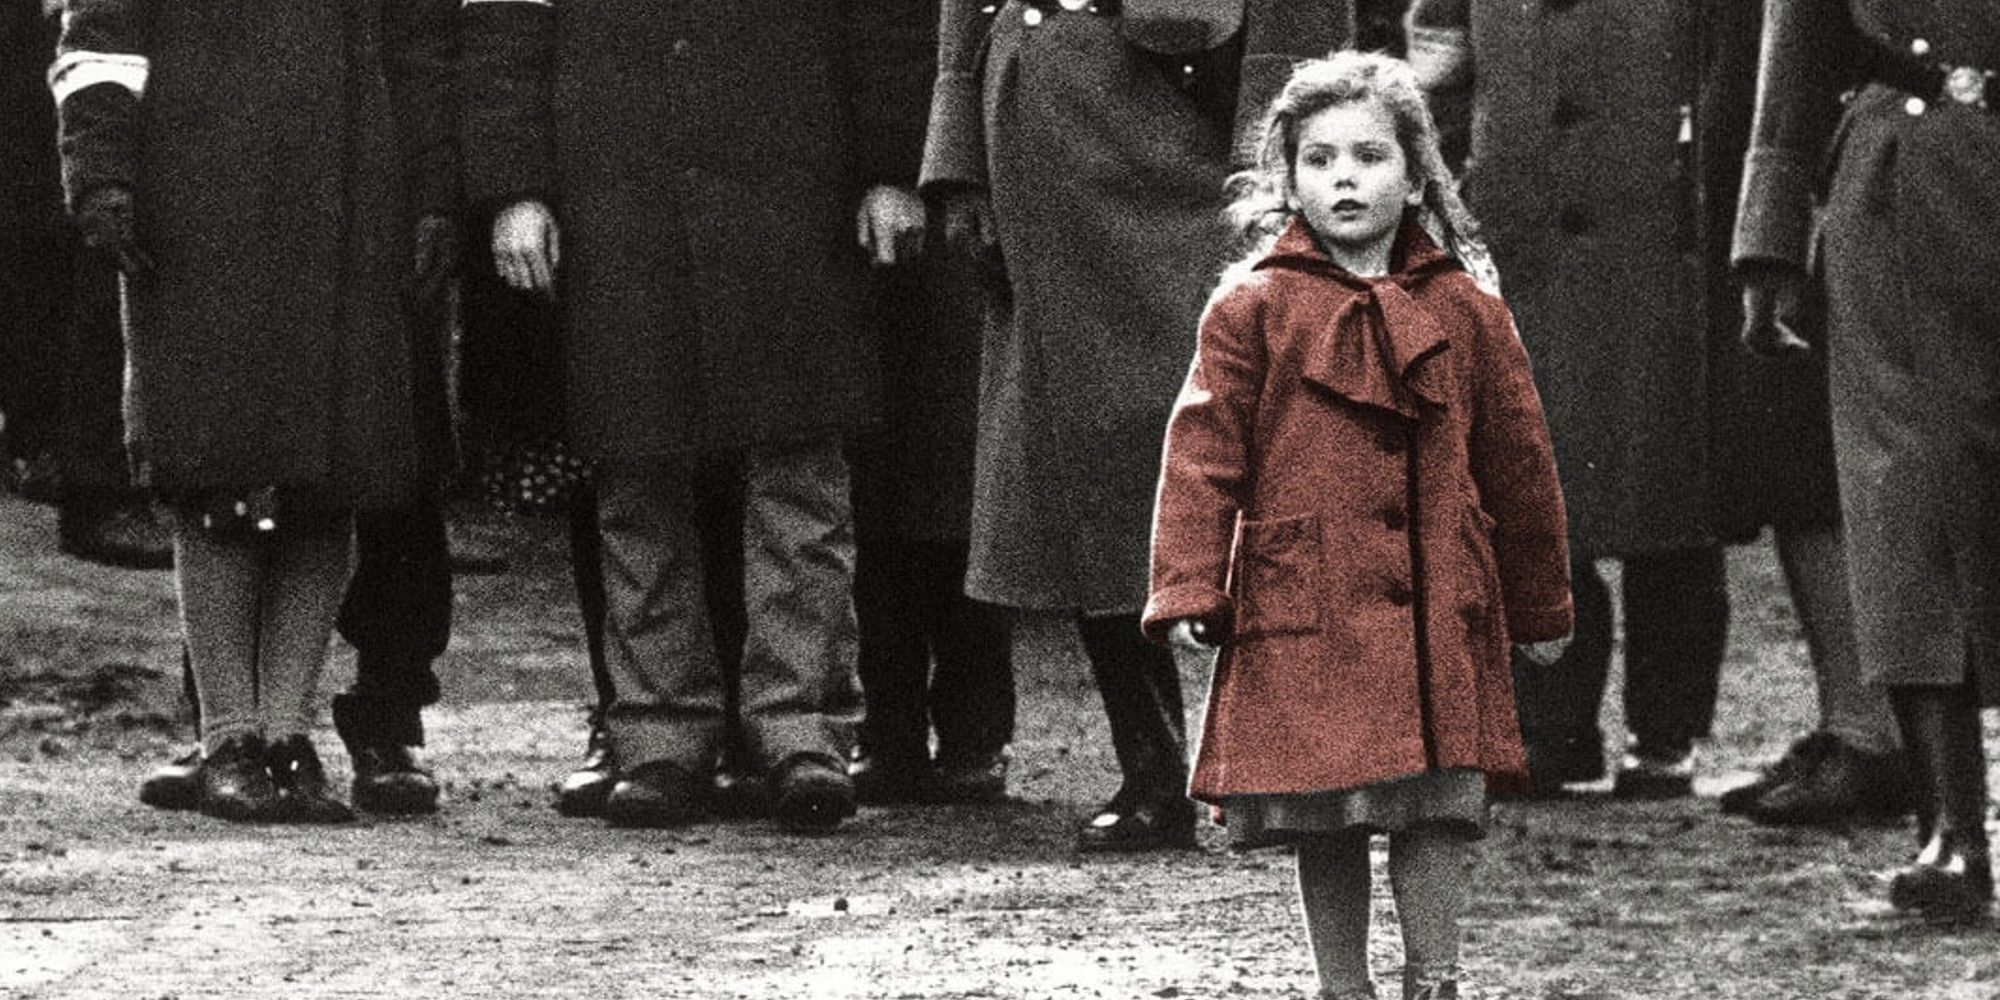 A little girl in walking alone in Schindler's List